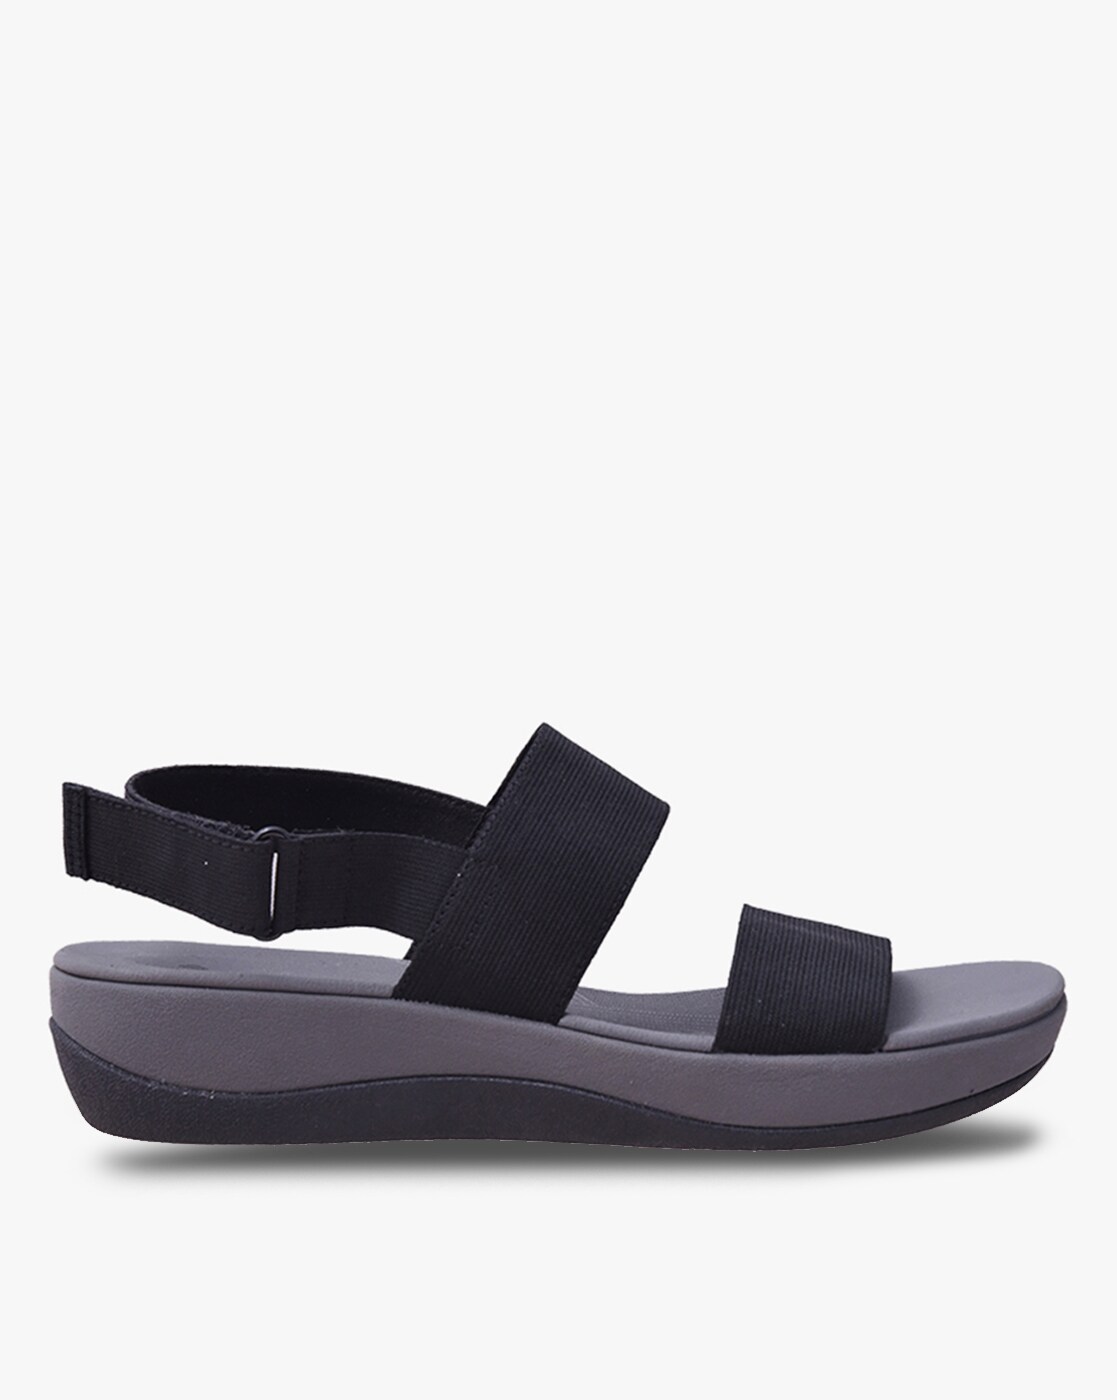 Clarks Womens Sillian Open Toe Walking Sport Sandals, Grey, Size 8.0 :  Amazon.in: Shoes & Handbags